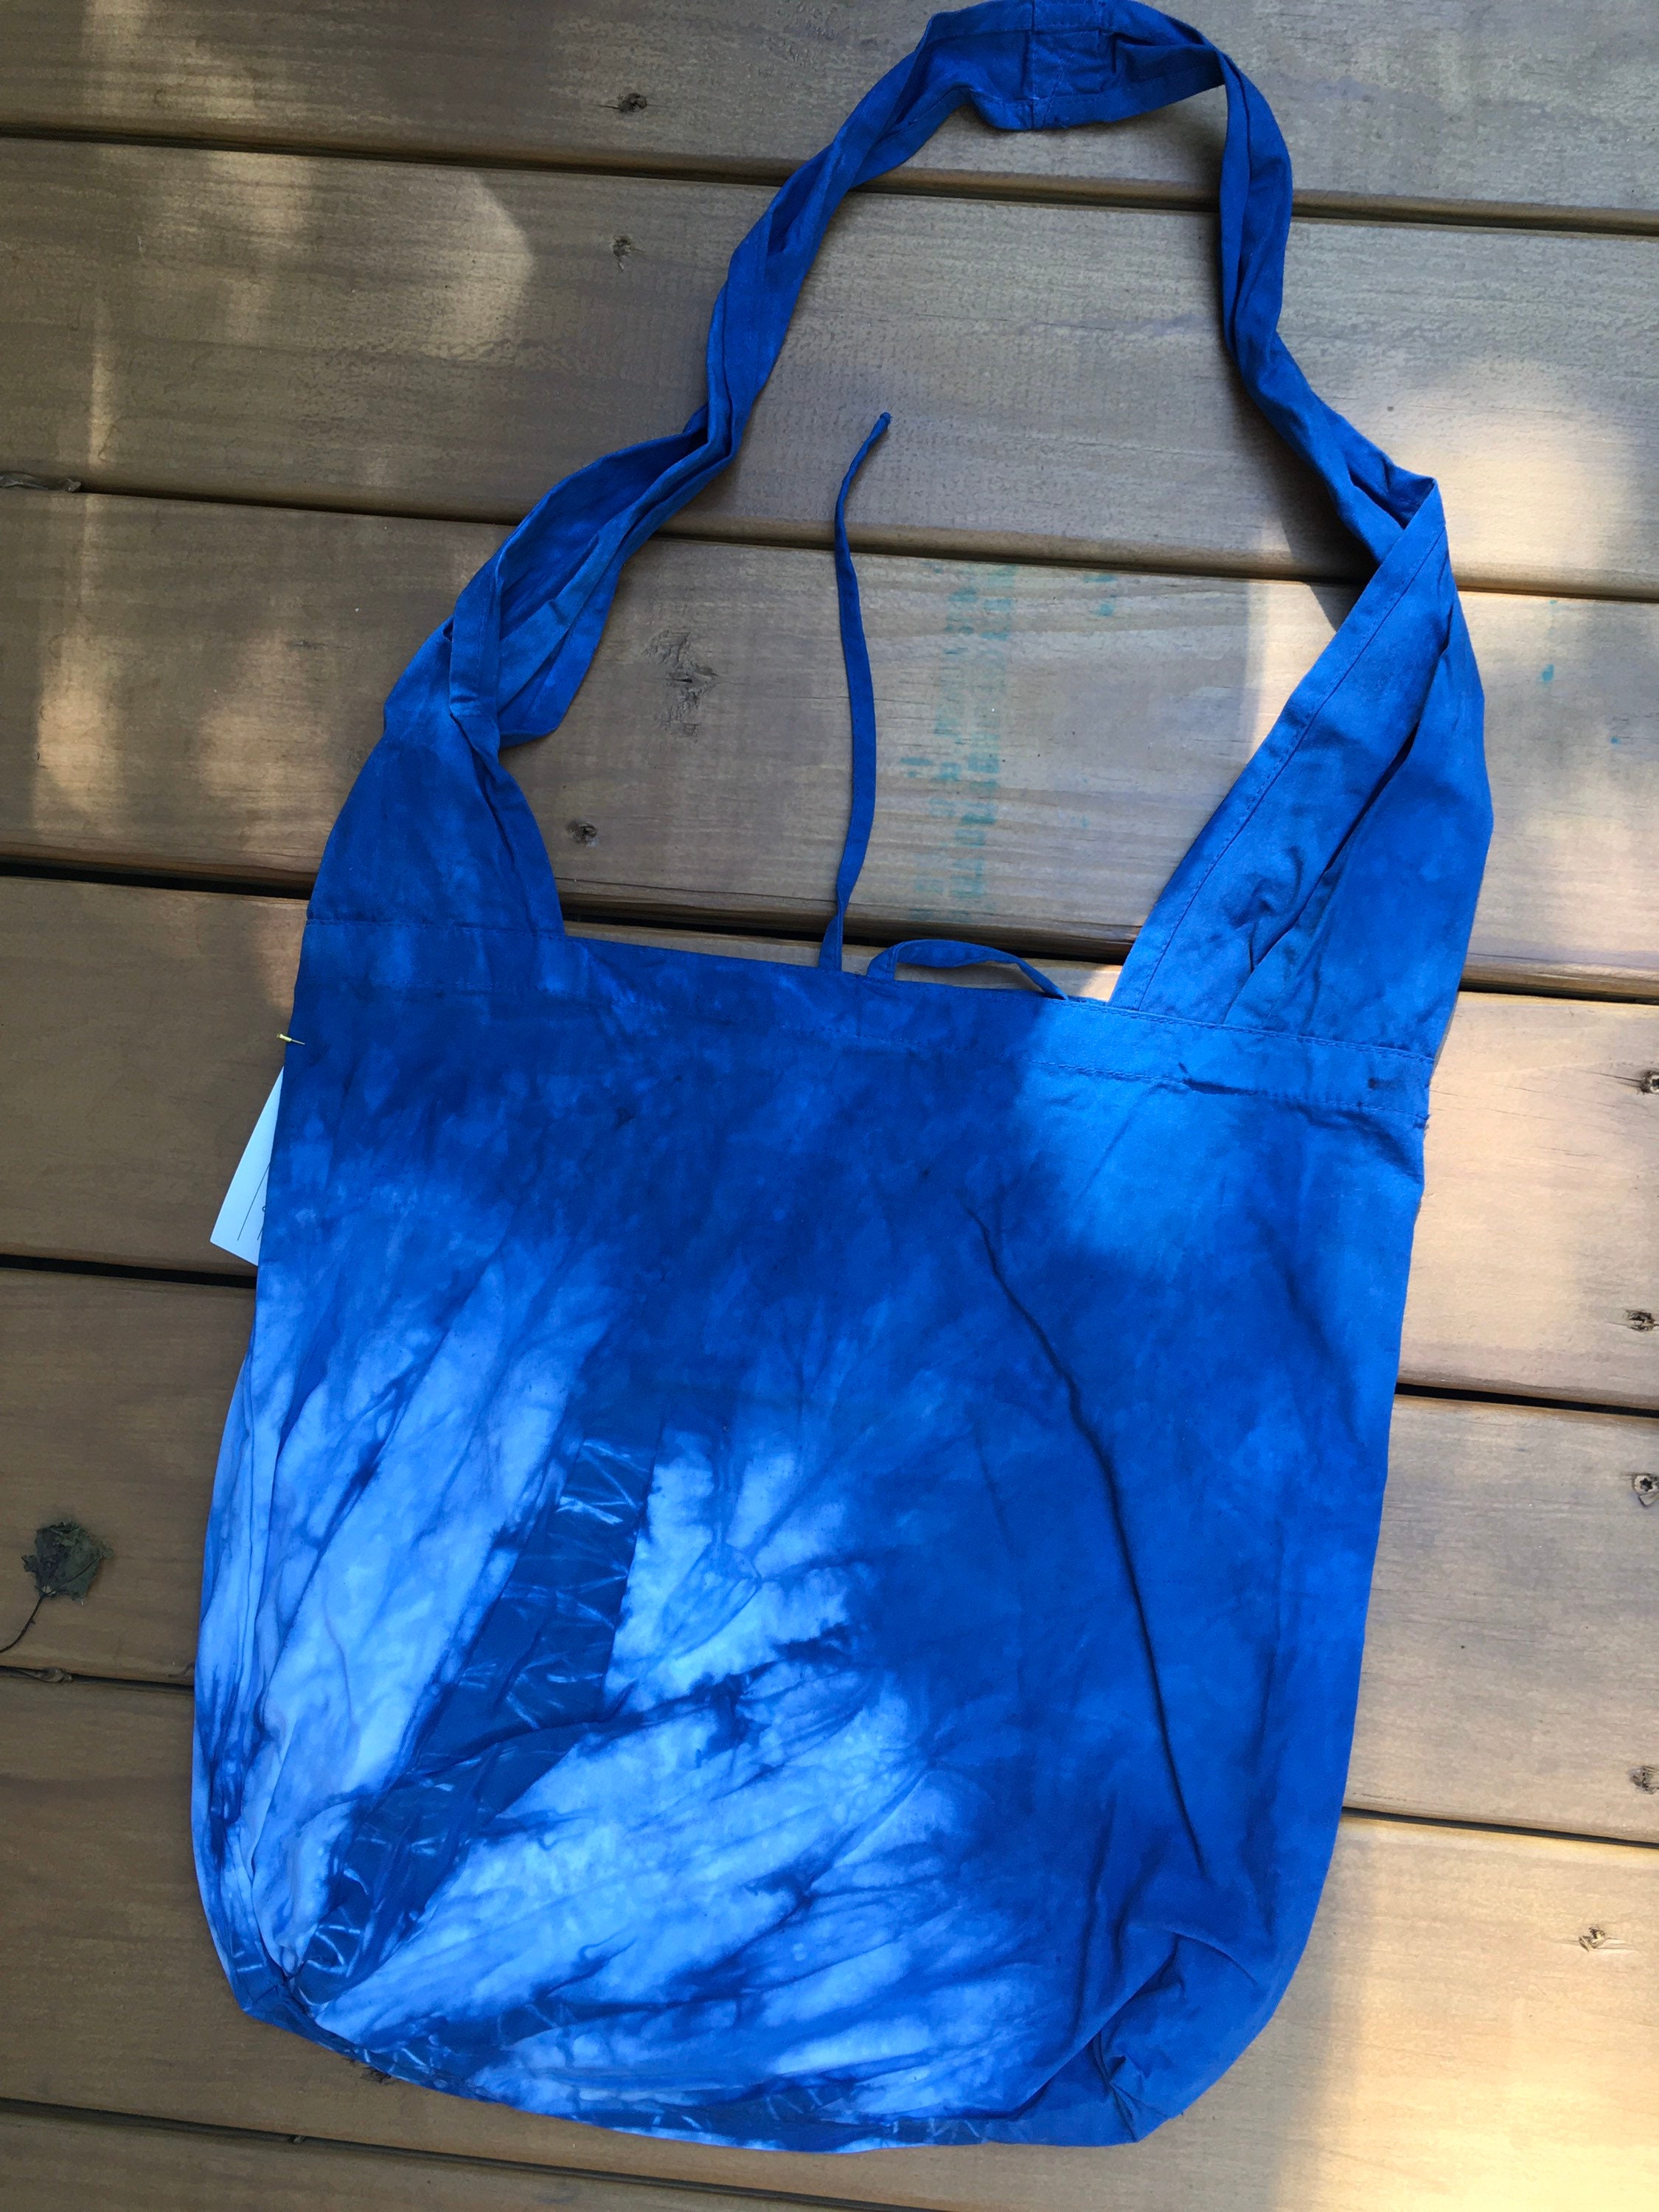 Botanical tie dye bag with bright color Natural colorful dye cotton bag / shoulder bag Bags & Purses Handbags Hobo Bags Gardenia / Caesiplnia / Dioscorea / indigo dye 